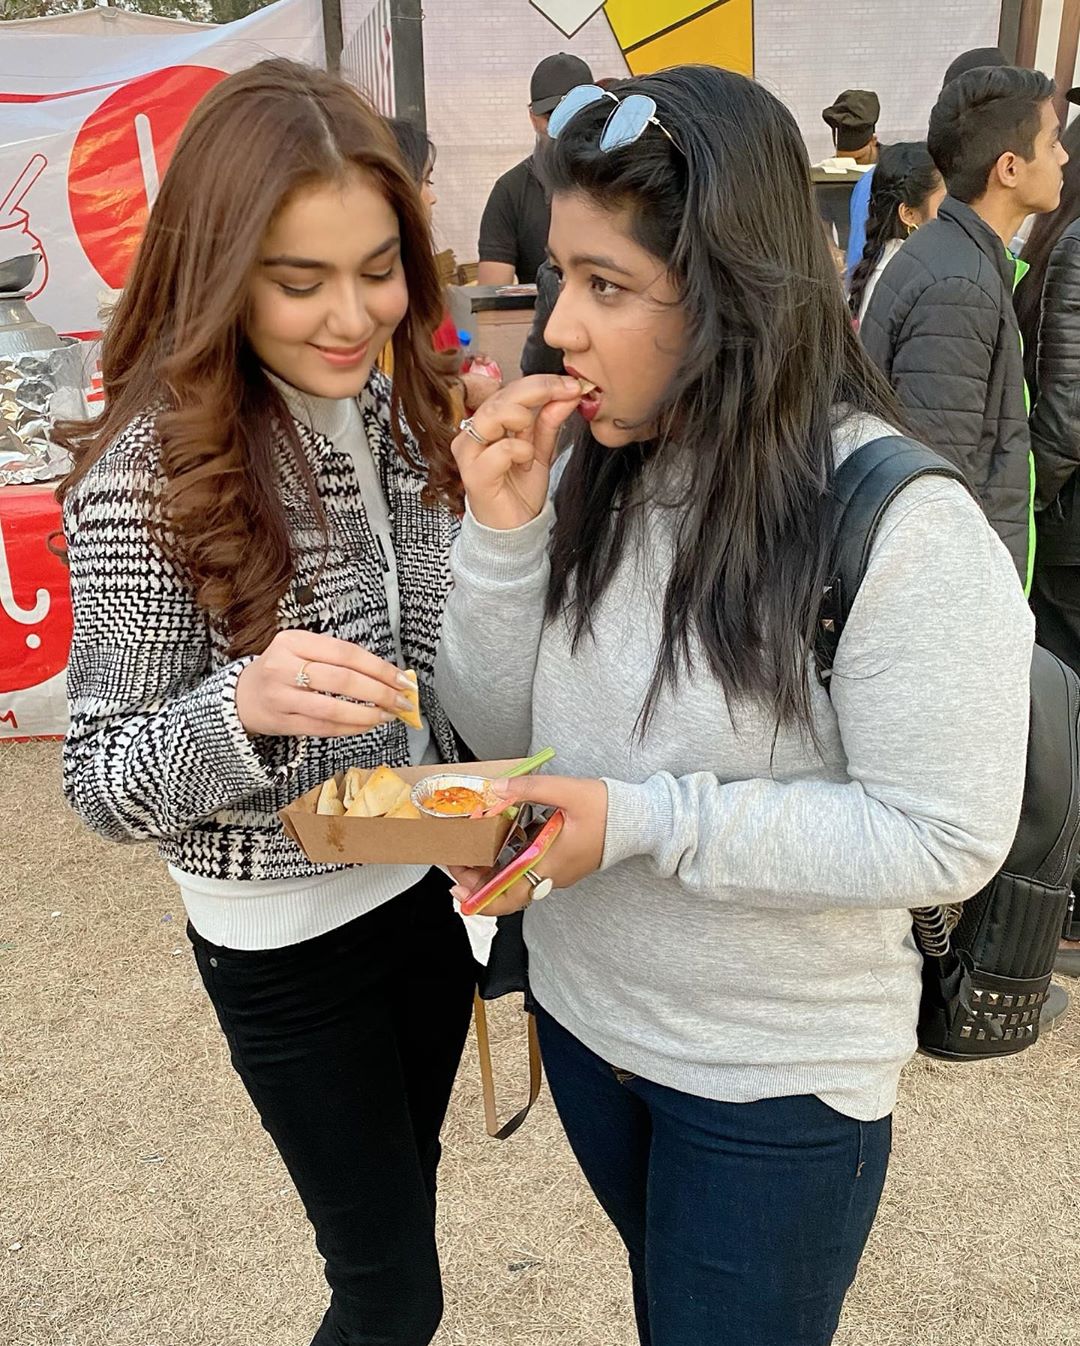 Latest Clicks of Syeda Tuba Aamir from Eat Karachi Festival